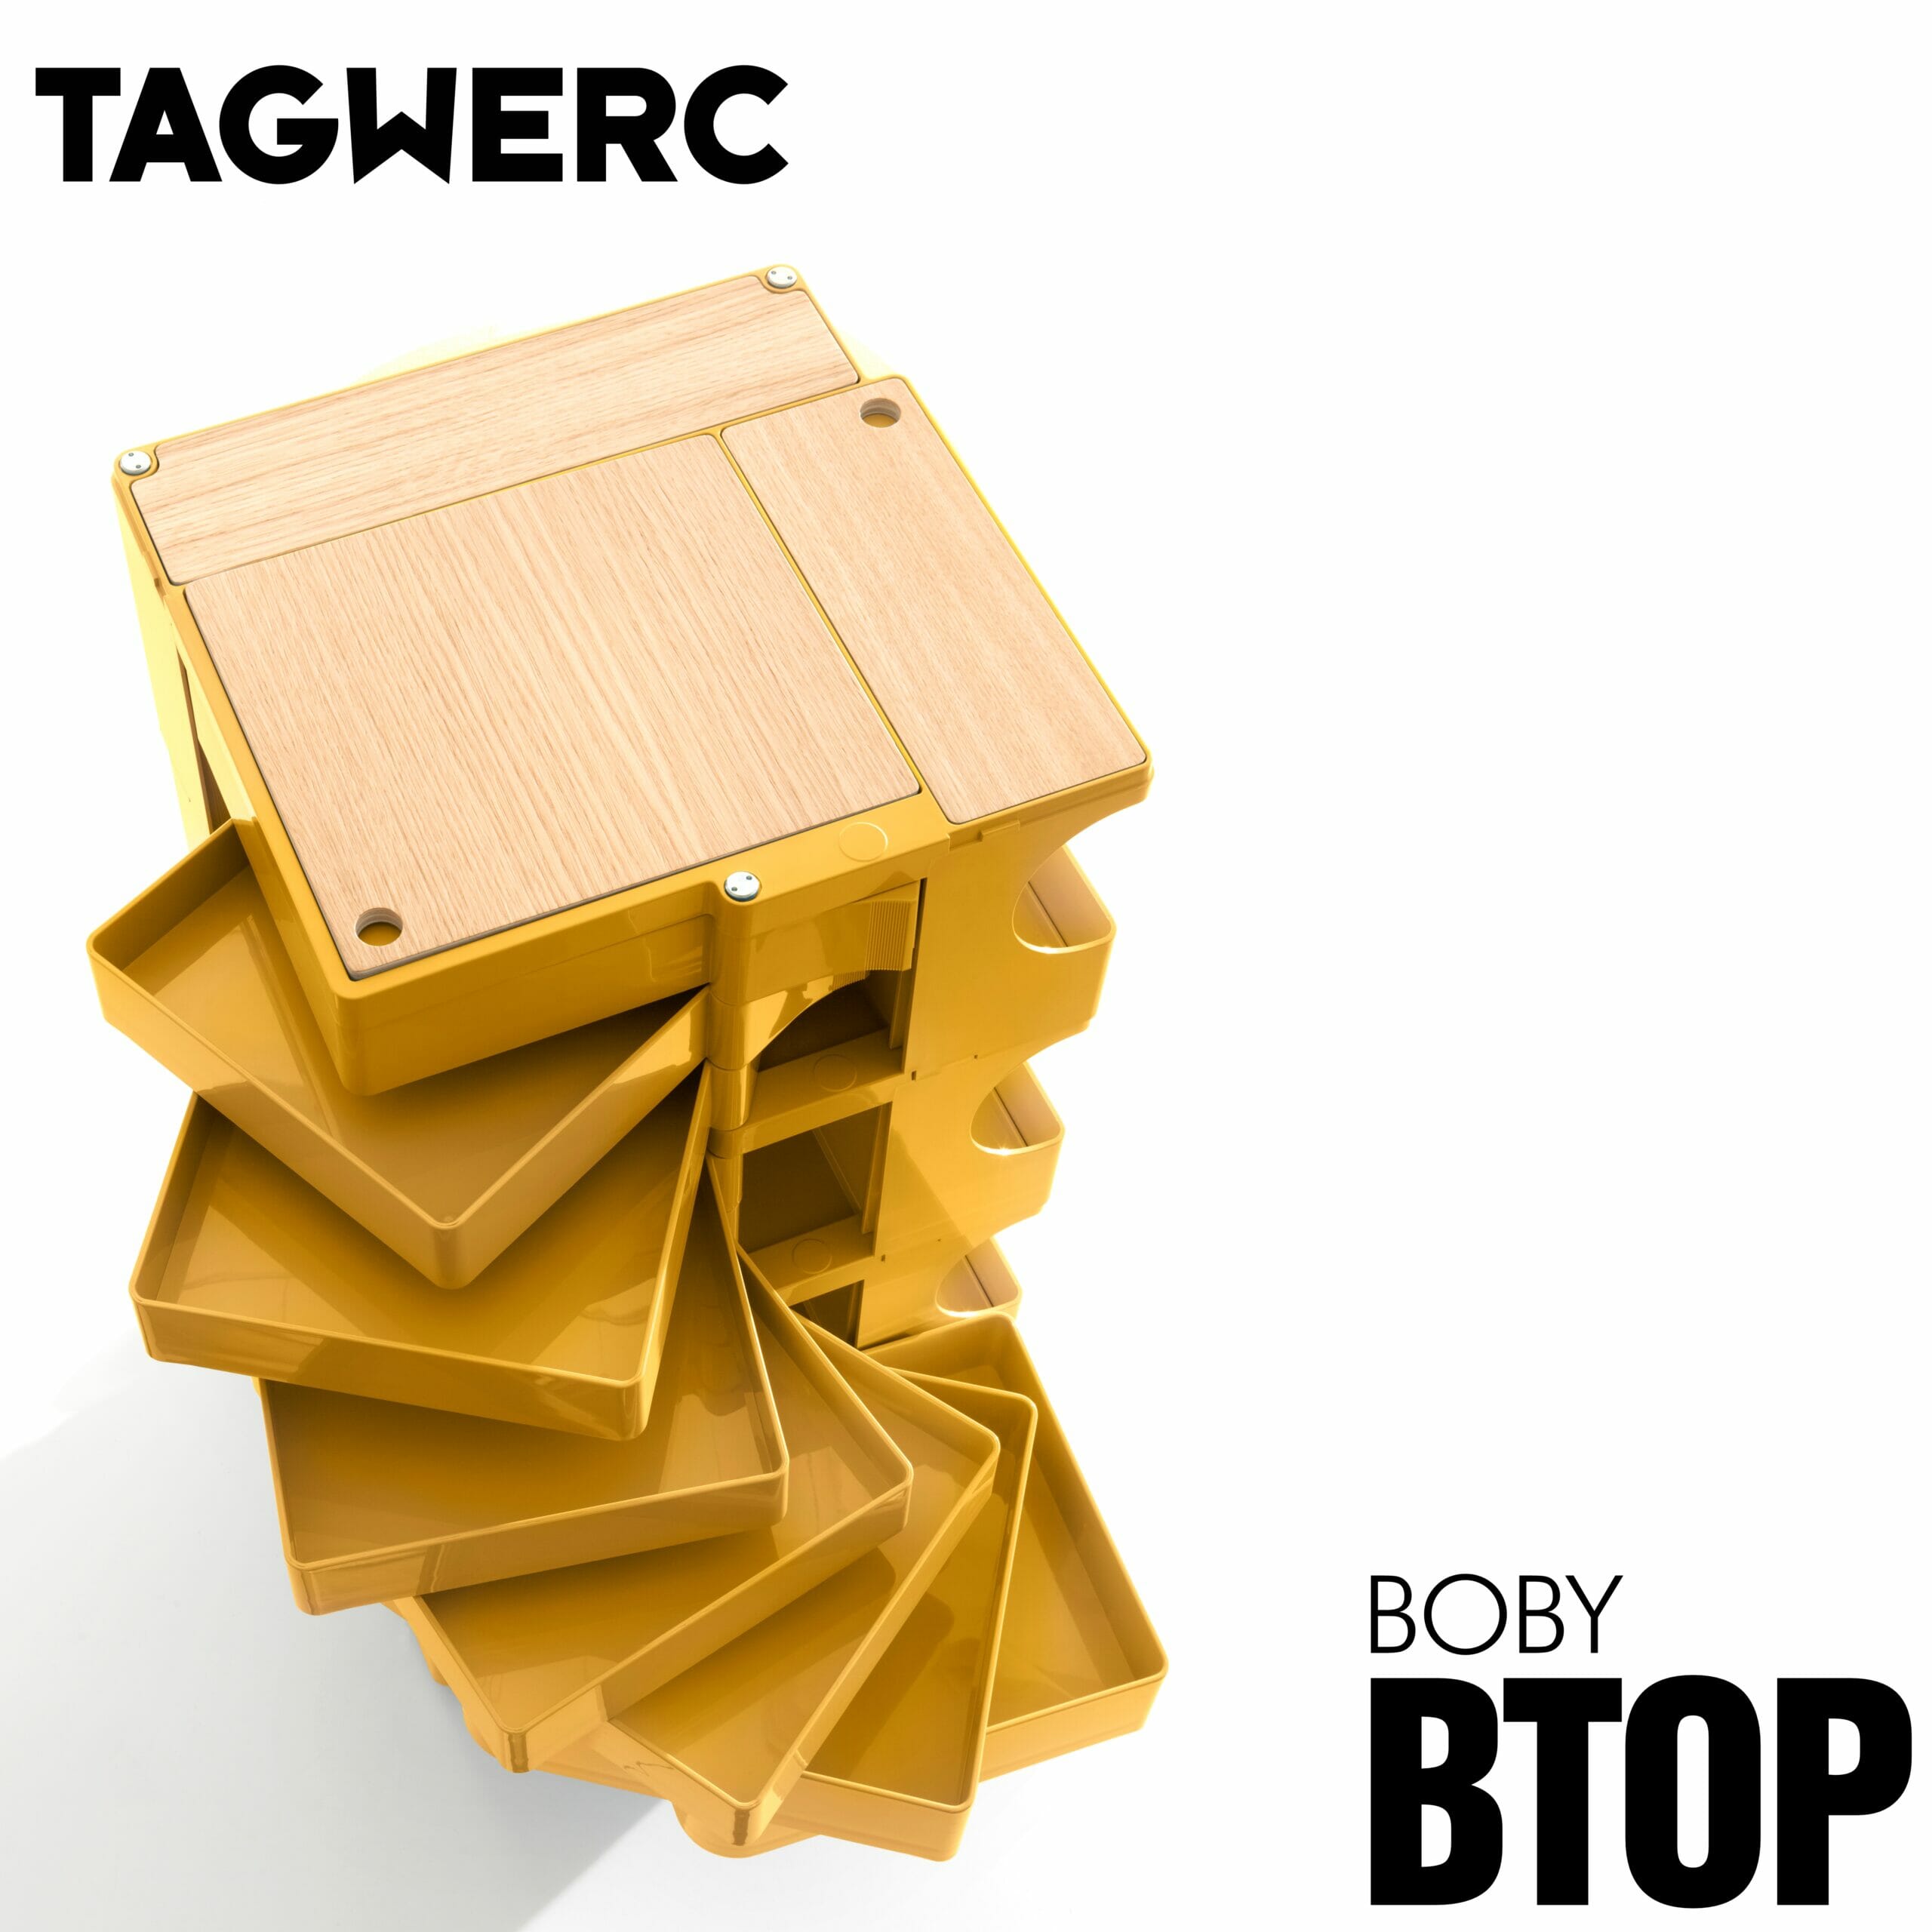 BTOP Eiche Natur Auflage für Boby Rollcontainer - B—Line